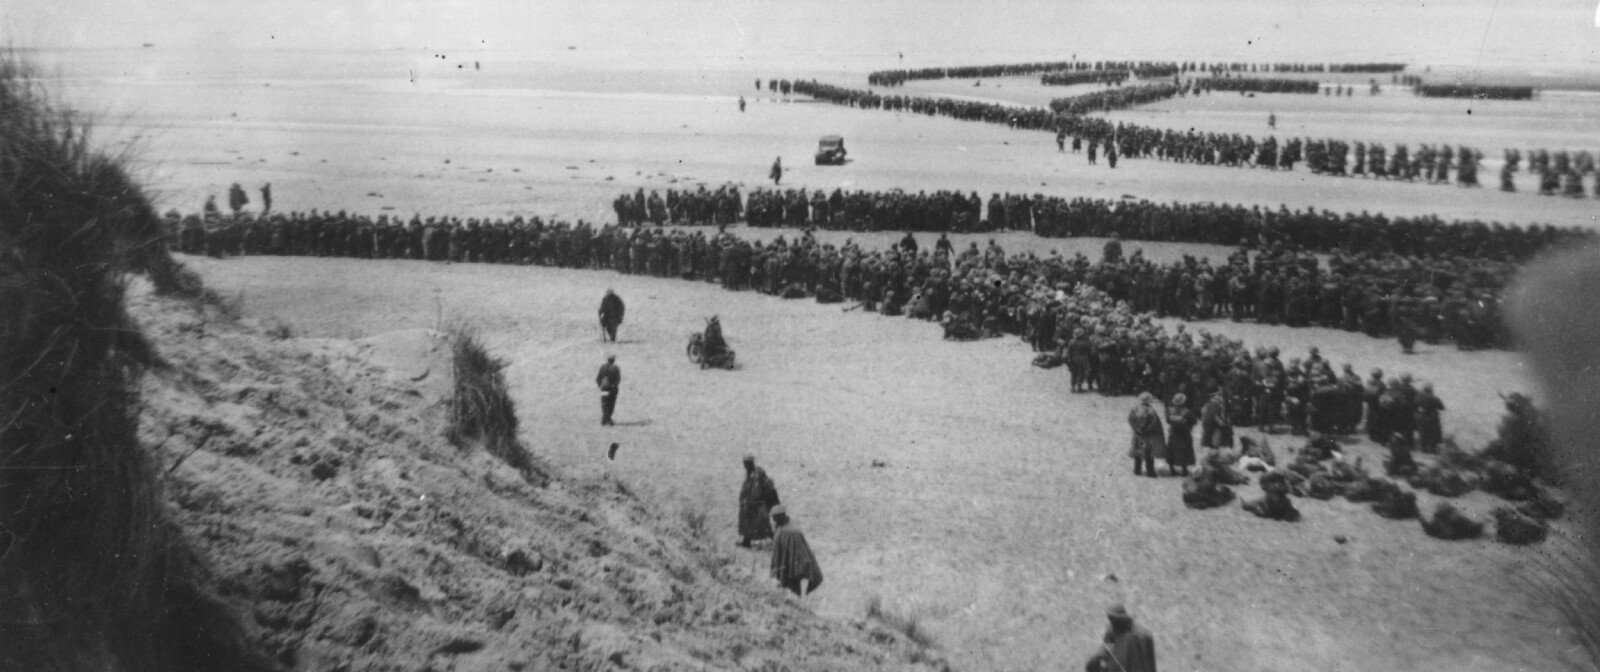 <b>SLAGET OM DUNKIRK: </b>Tusenvis av soldater står i kø for å bli evakuert fra Dunkirk i mai 1940. Av de 250.000 britiske soldatene som ble omringet i Dunkirk etter erobringen av Belgia, ble 30.000 drept. Det kunne ha endt mye verre.